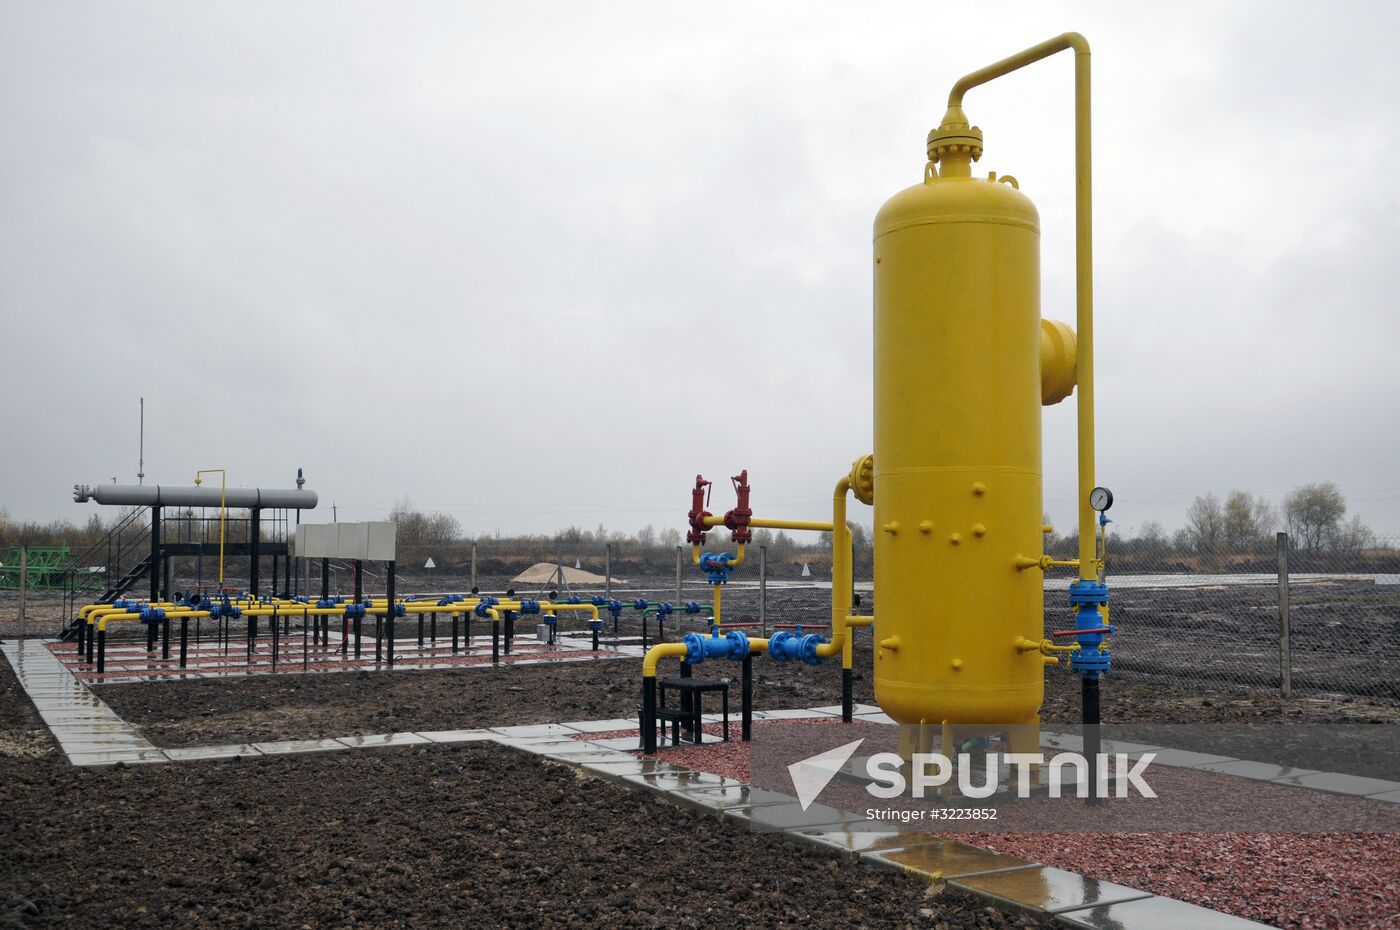 Bystritska gas field launched in Lviv Region